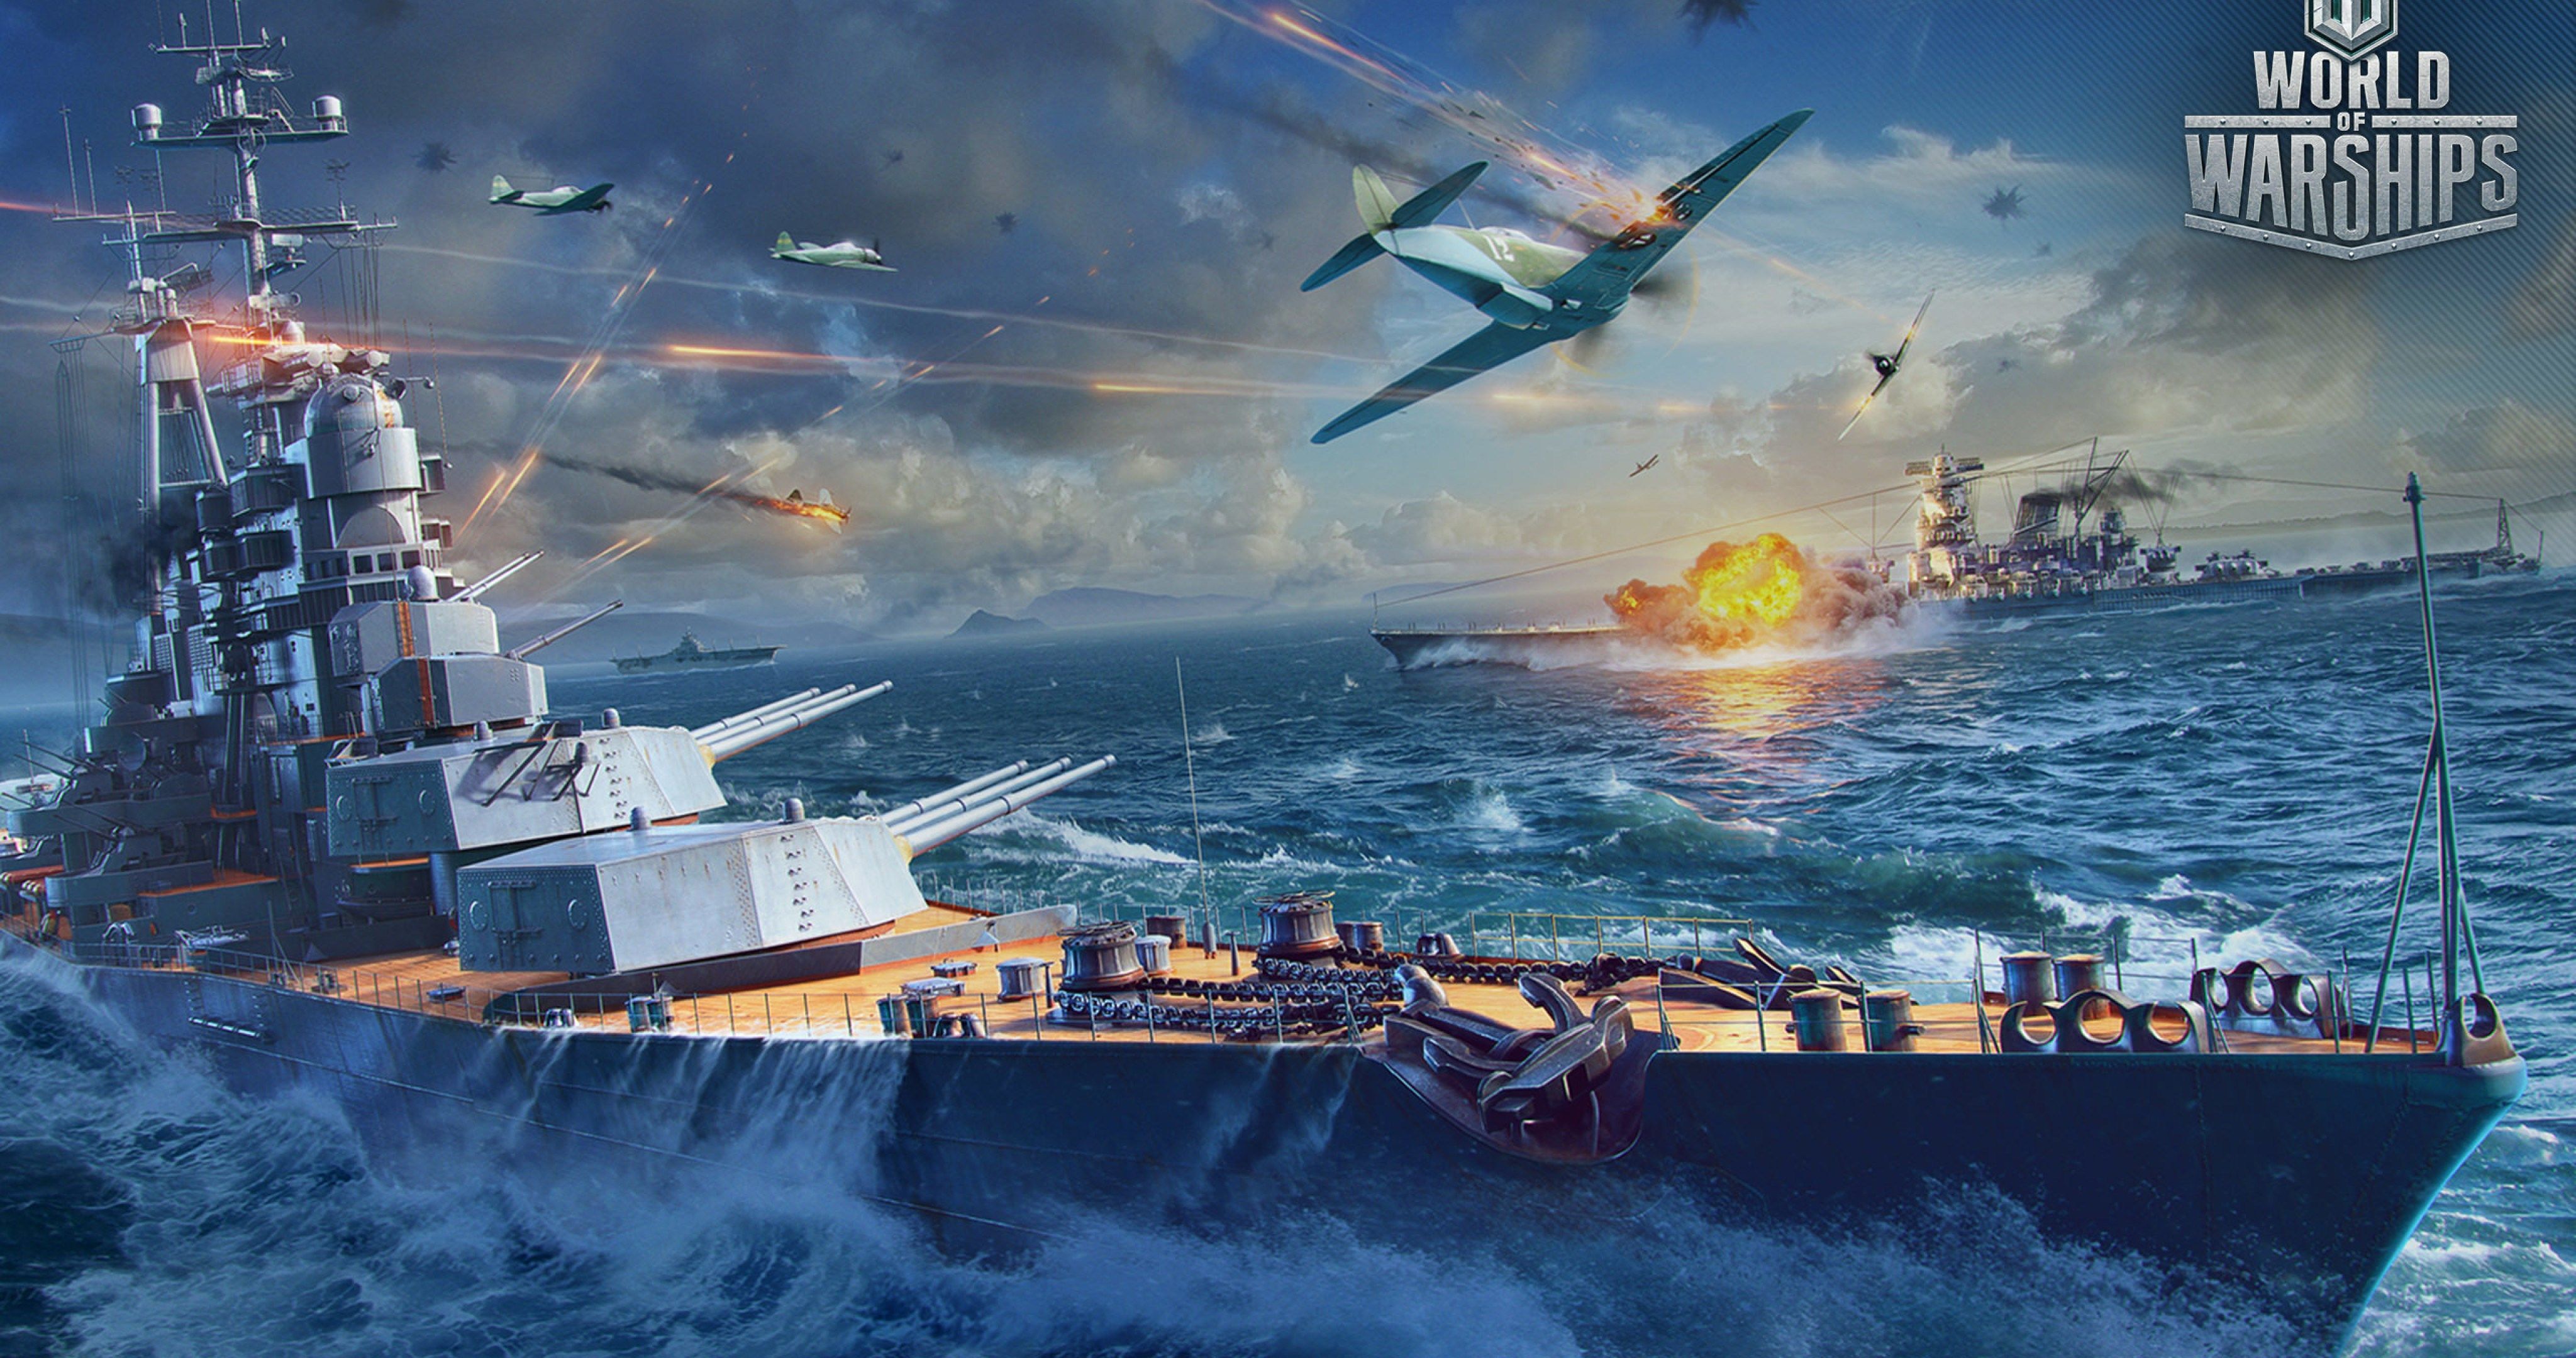 ussr battleship attack 4k ultra HD wallpaper. World of warships wallpaper, Battleship, Warship